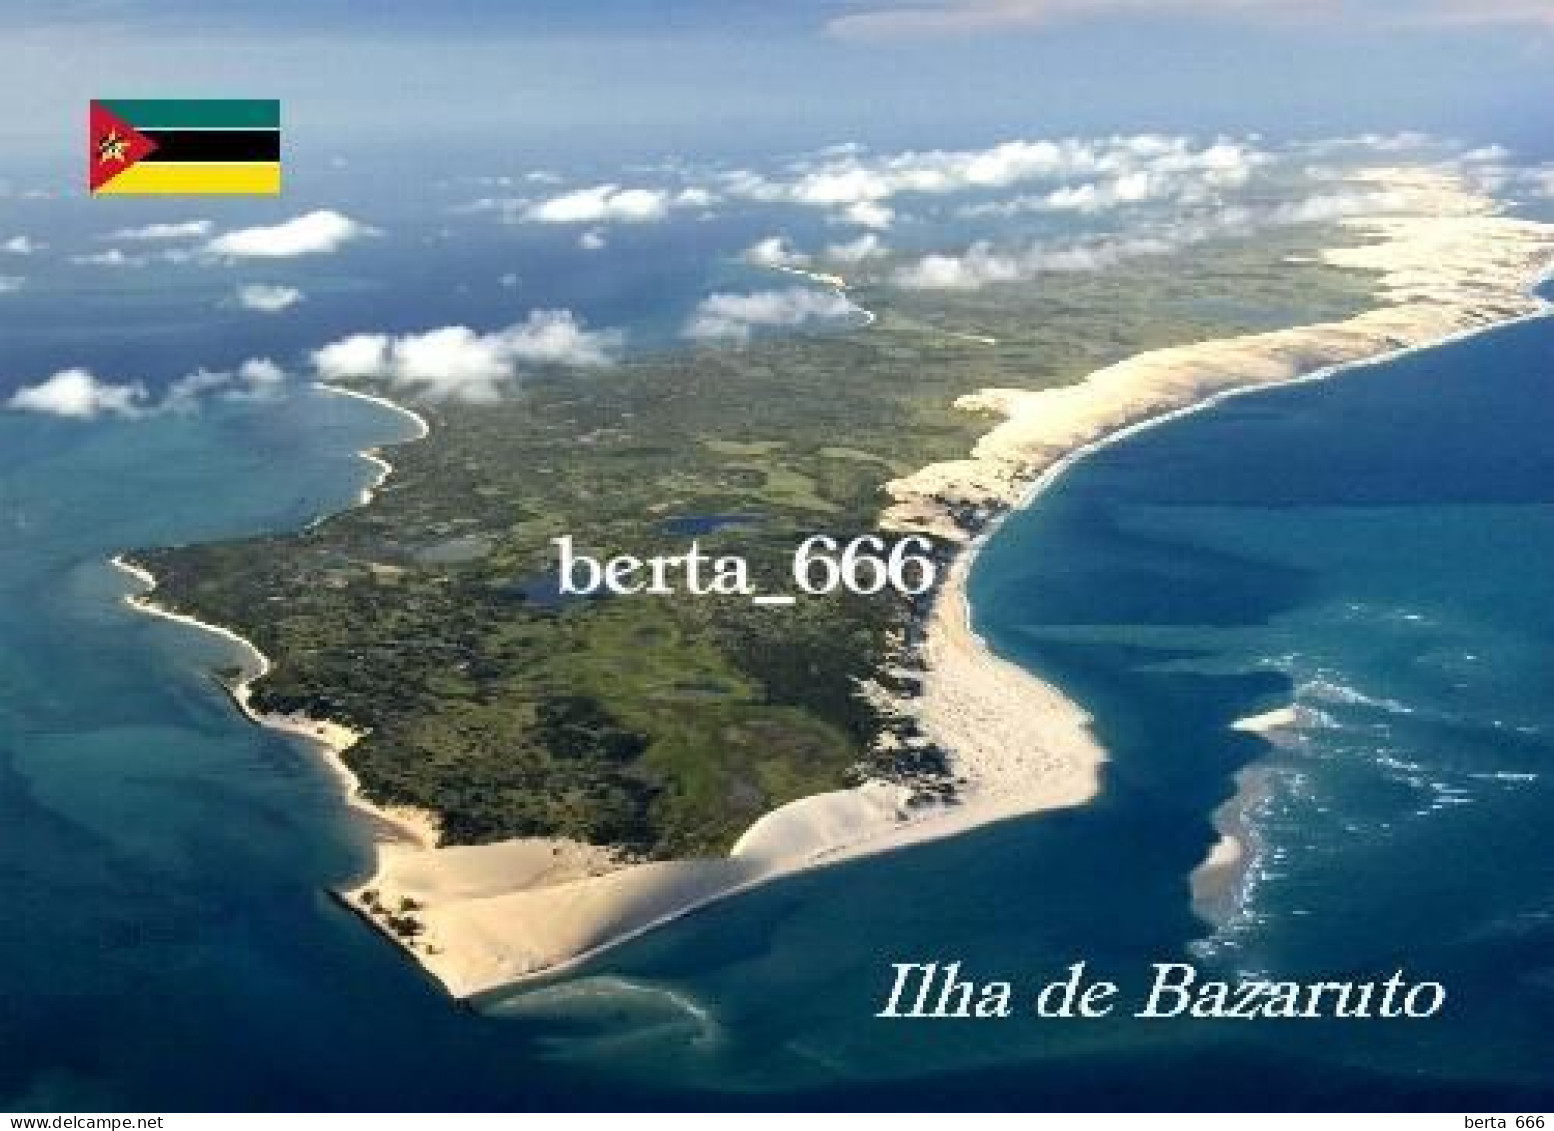 Mozambique Bazaruto Island Aerial View New Postcard - Mozambique